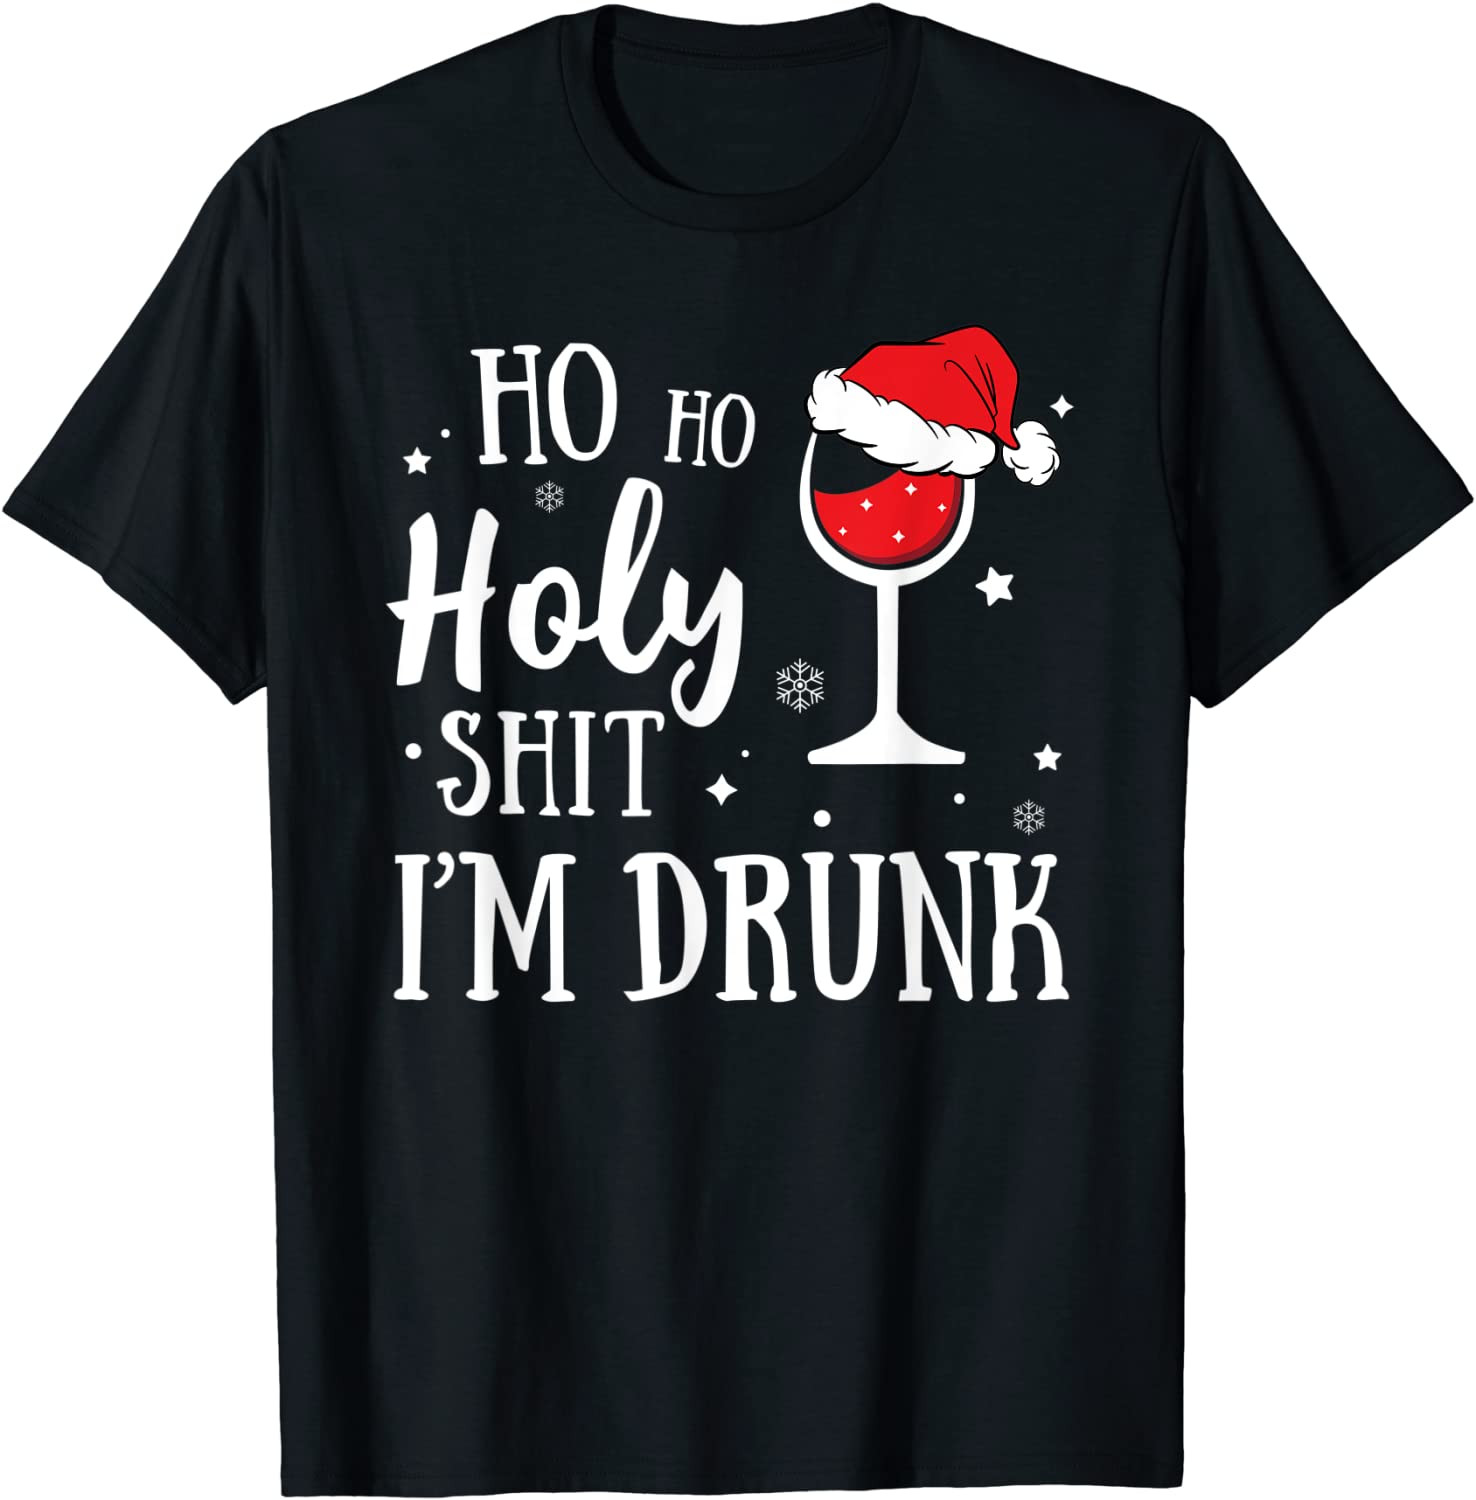 Ho Ho Holly Shit I'm Drunk T-Shirt